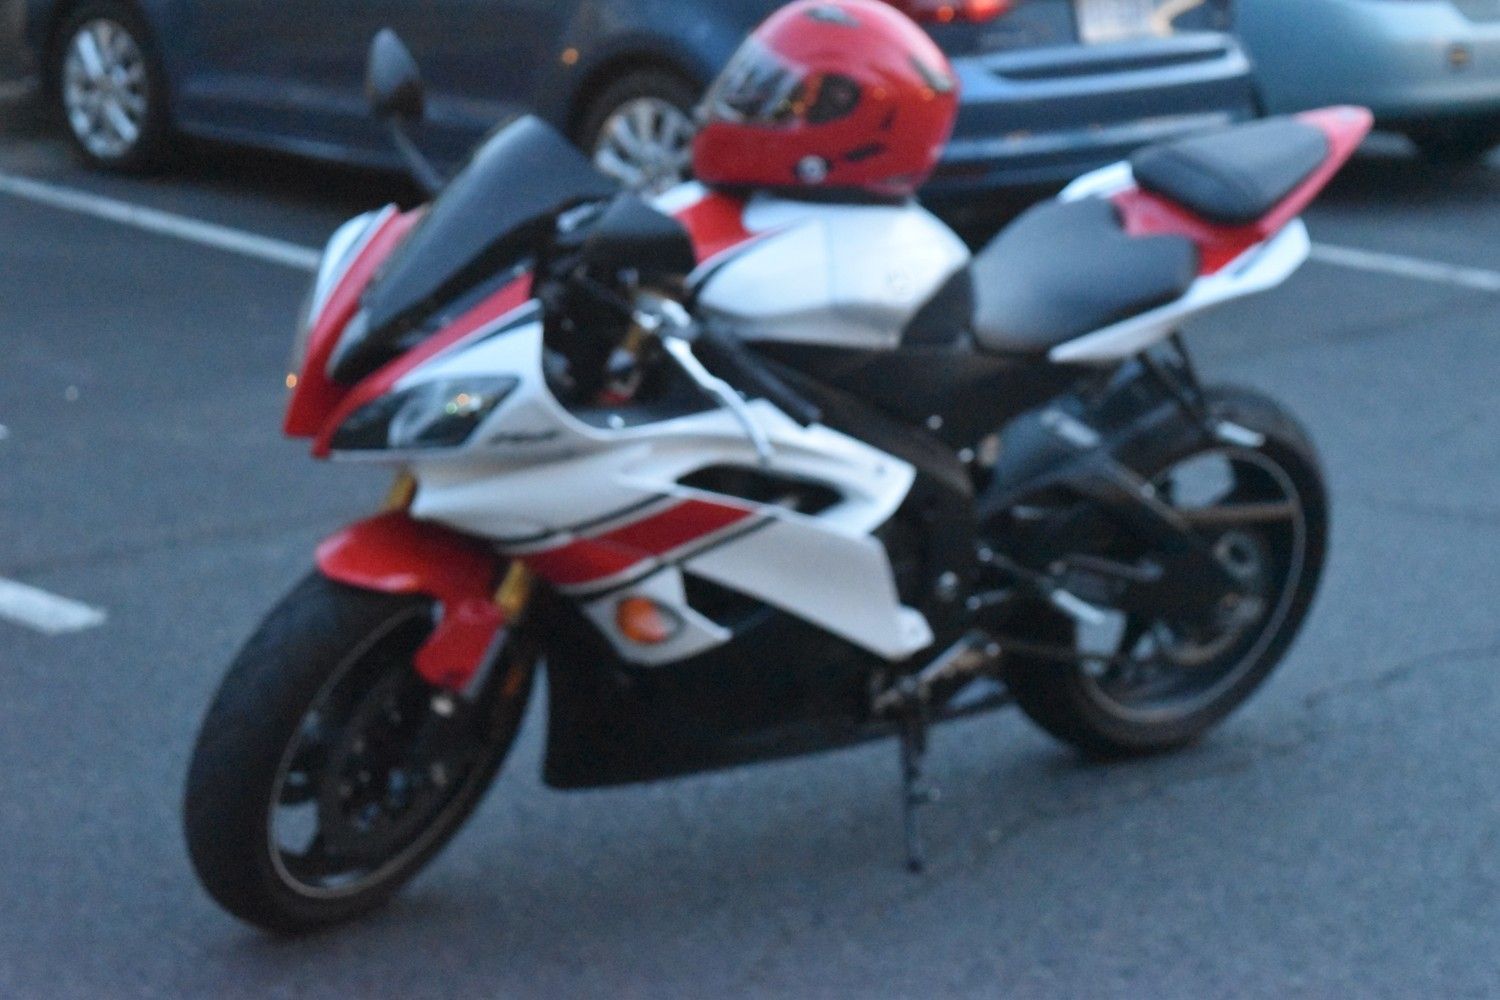 Yamaha R6 2014